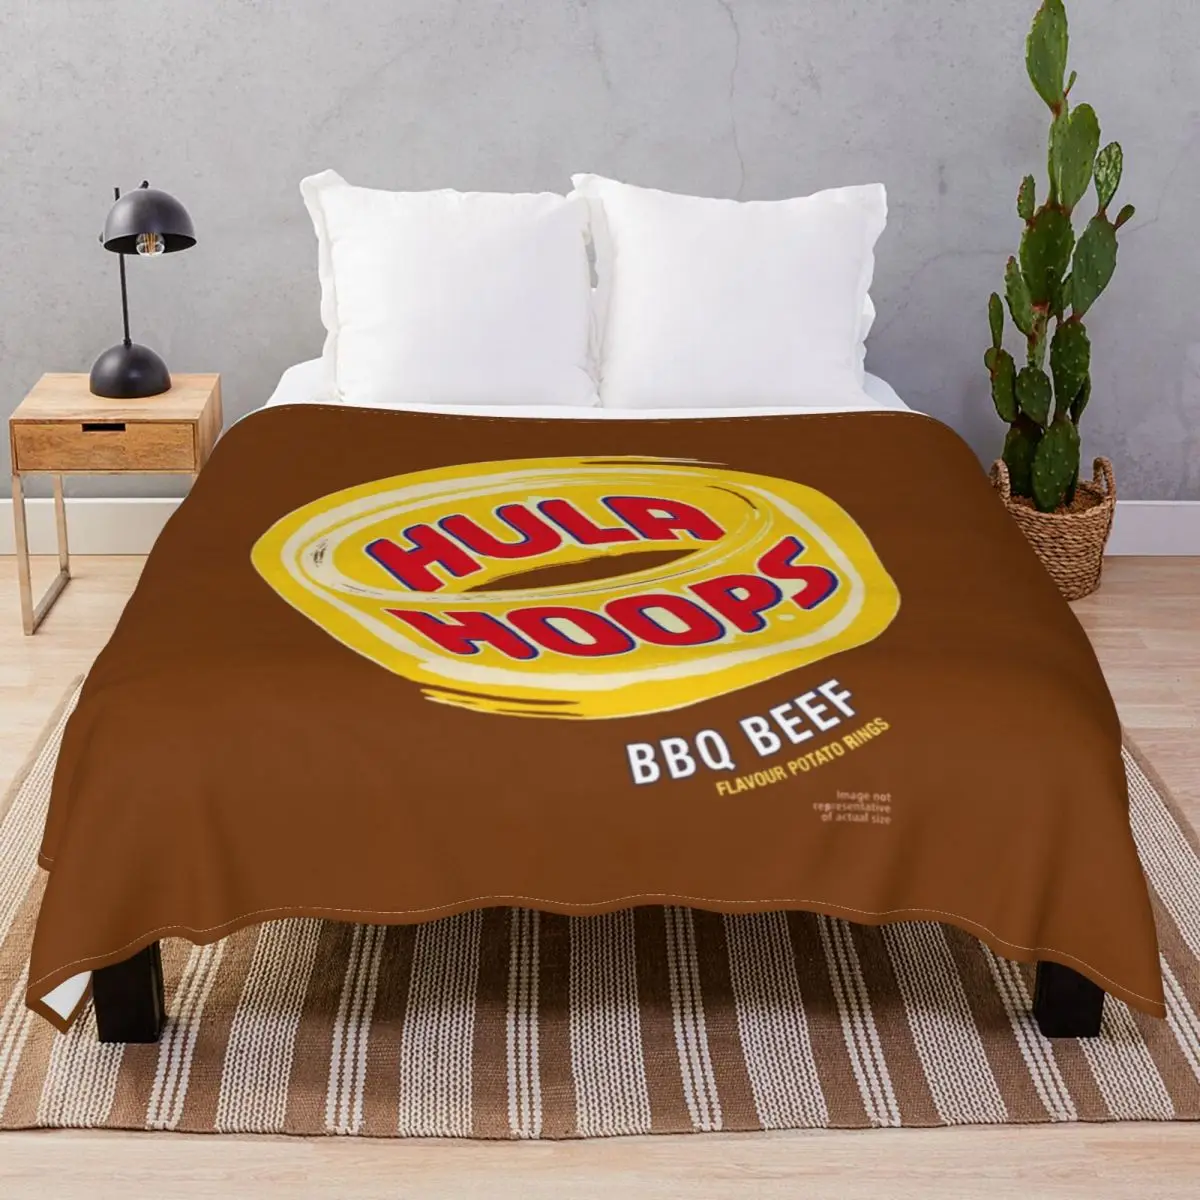 

Hula кольца барбекю говядина чипсы одеяло s флис плюшевый принт ультра-мягкое плед одеяло для постельного белья дома диван путешествия офиса